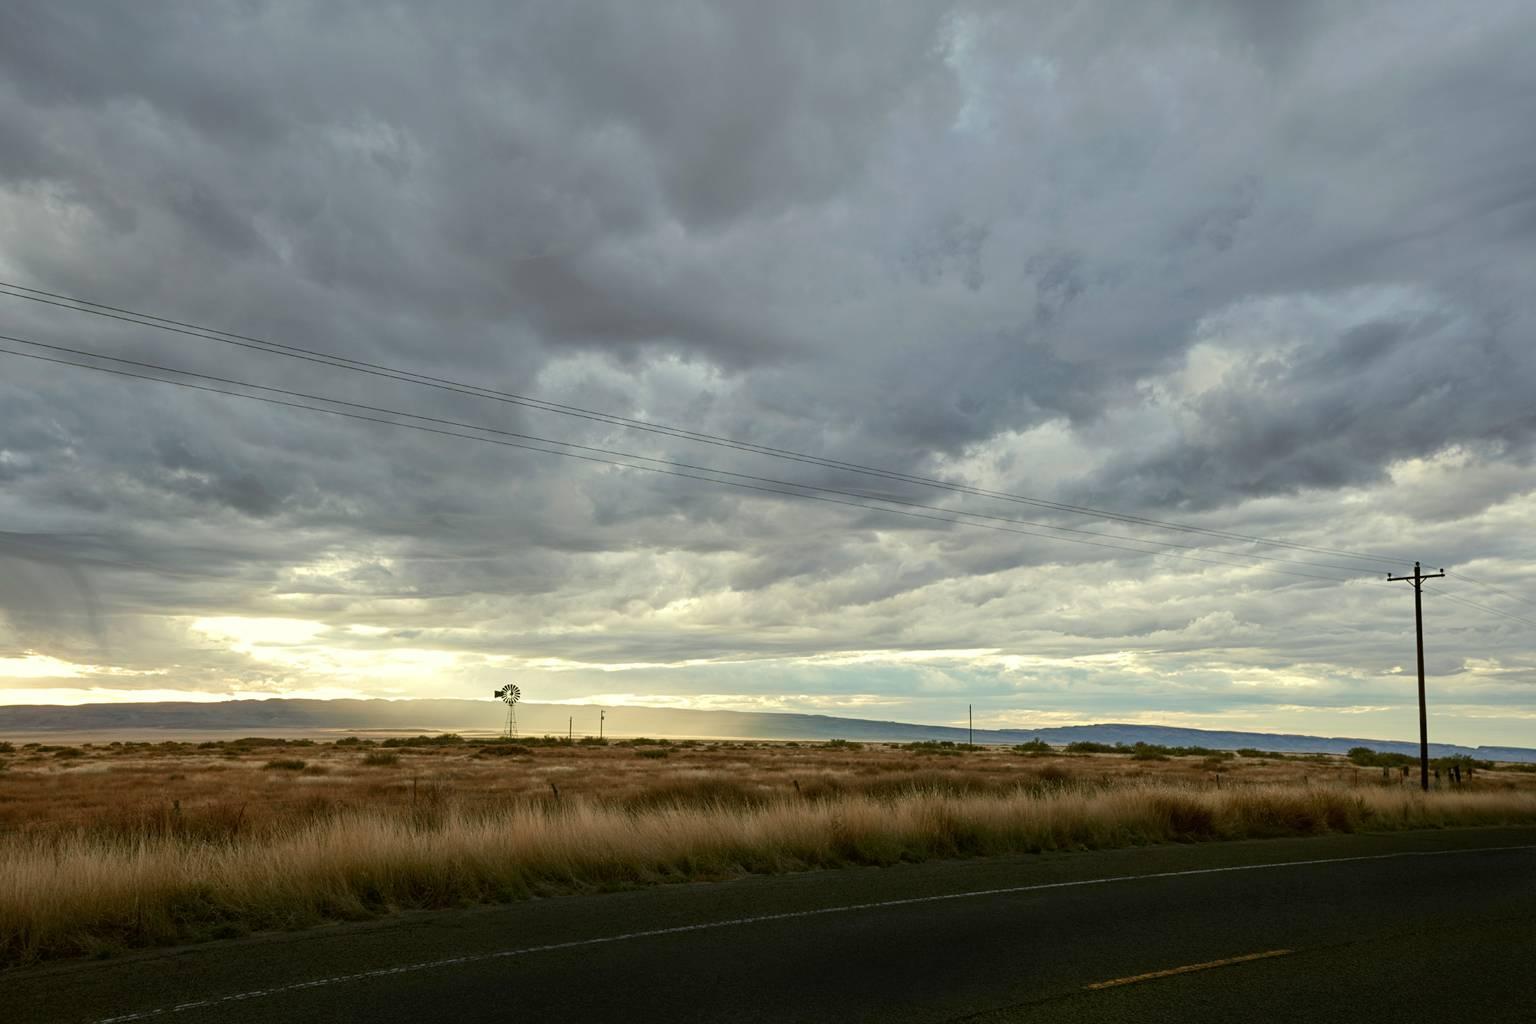 Landscape Photograph Frank Schott - Marfa (Texas) - photographie grand format de nuages spectaculaires sur des champs infinis